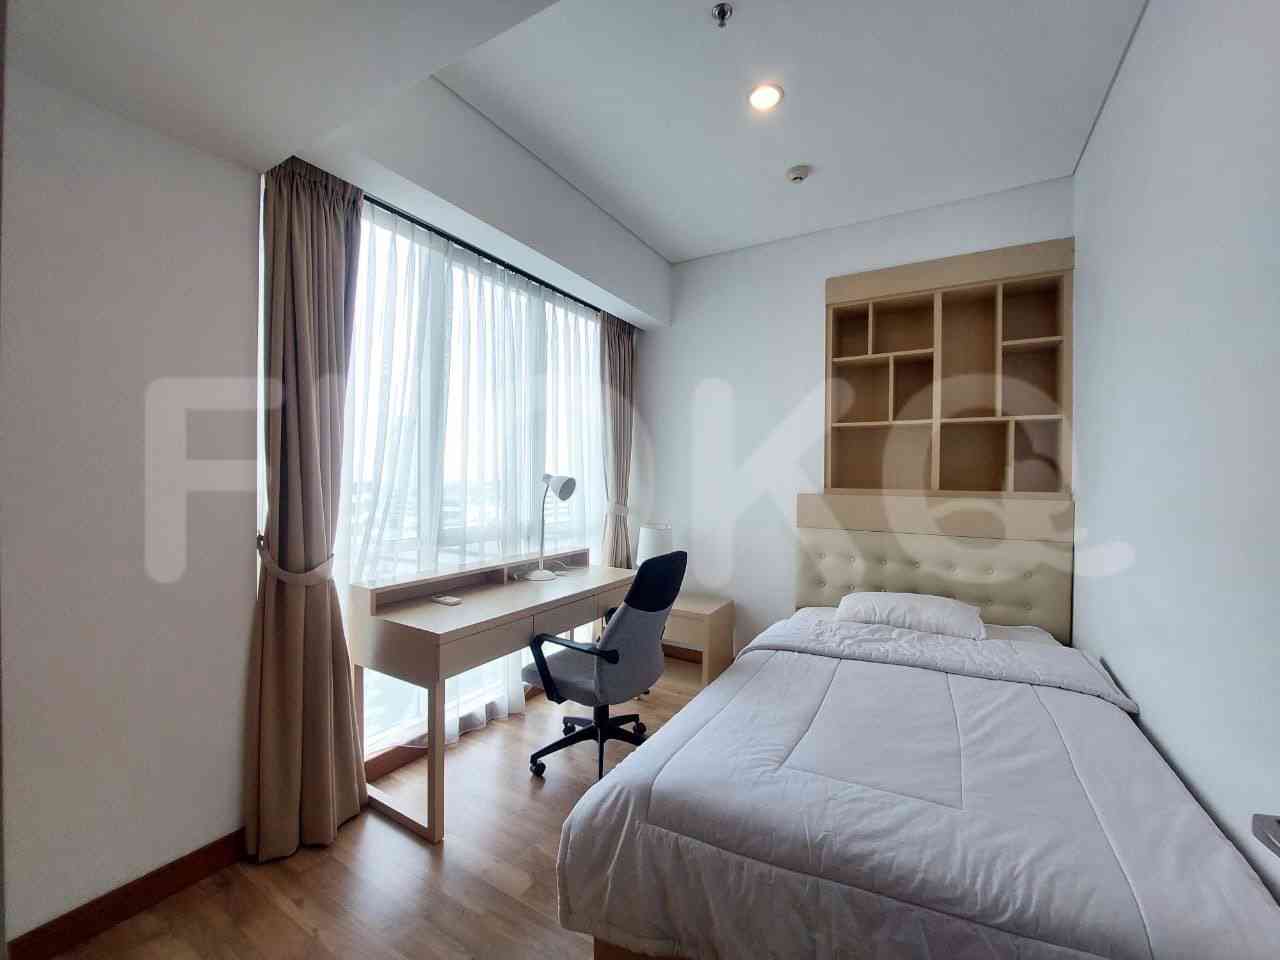 3 Bedroom on 15th Floor for Rent in Sky Garden - fseff8 3